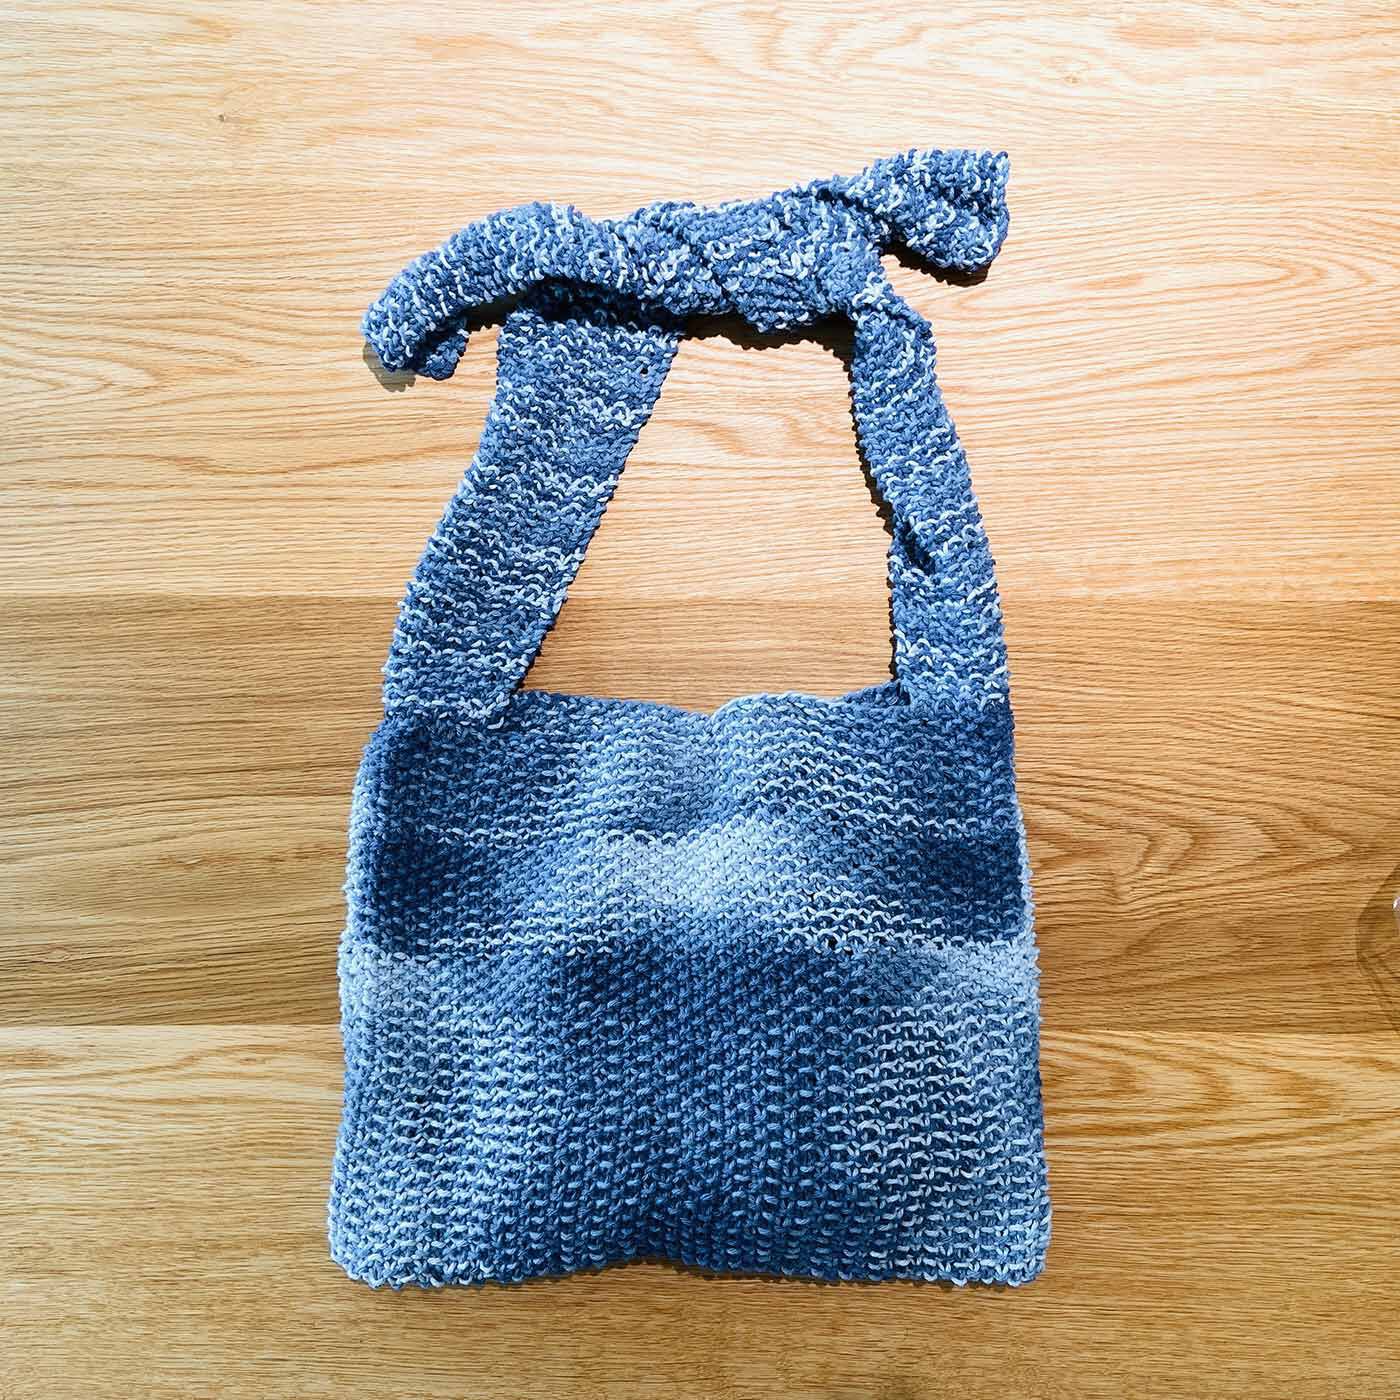 Couturier special|ＤＭＣ　エコバルバンテで編む　かのこ編み肩かけバッグキット|2.段染めブルーの作品例です。